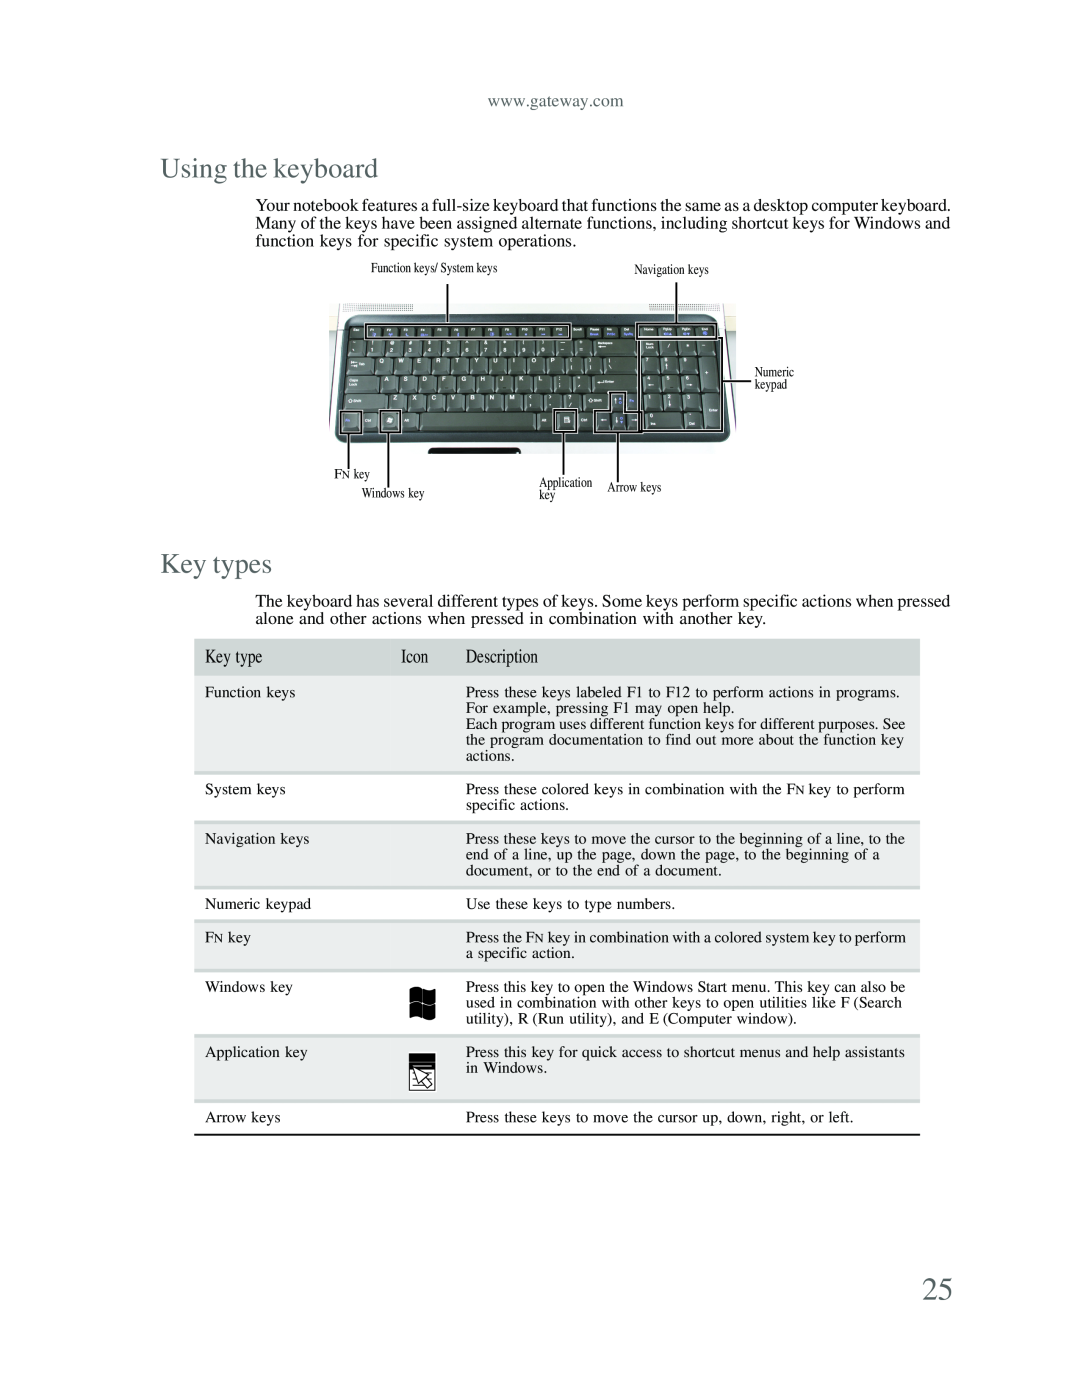 Gateway p-79 manual Using the keyboard, Key types 